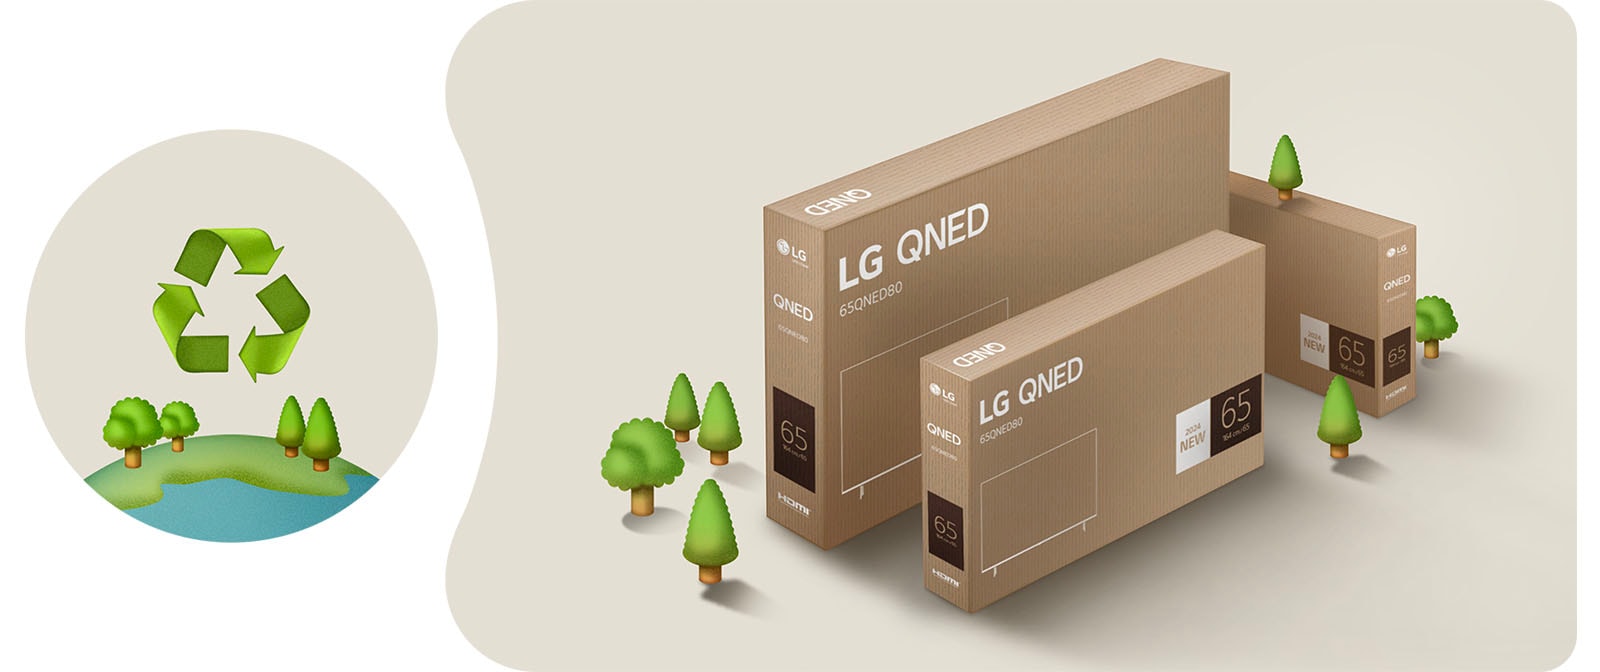 Bao bì LG QNED với nền màu be có hình minh họa cây cối.